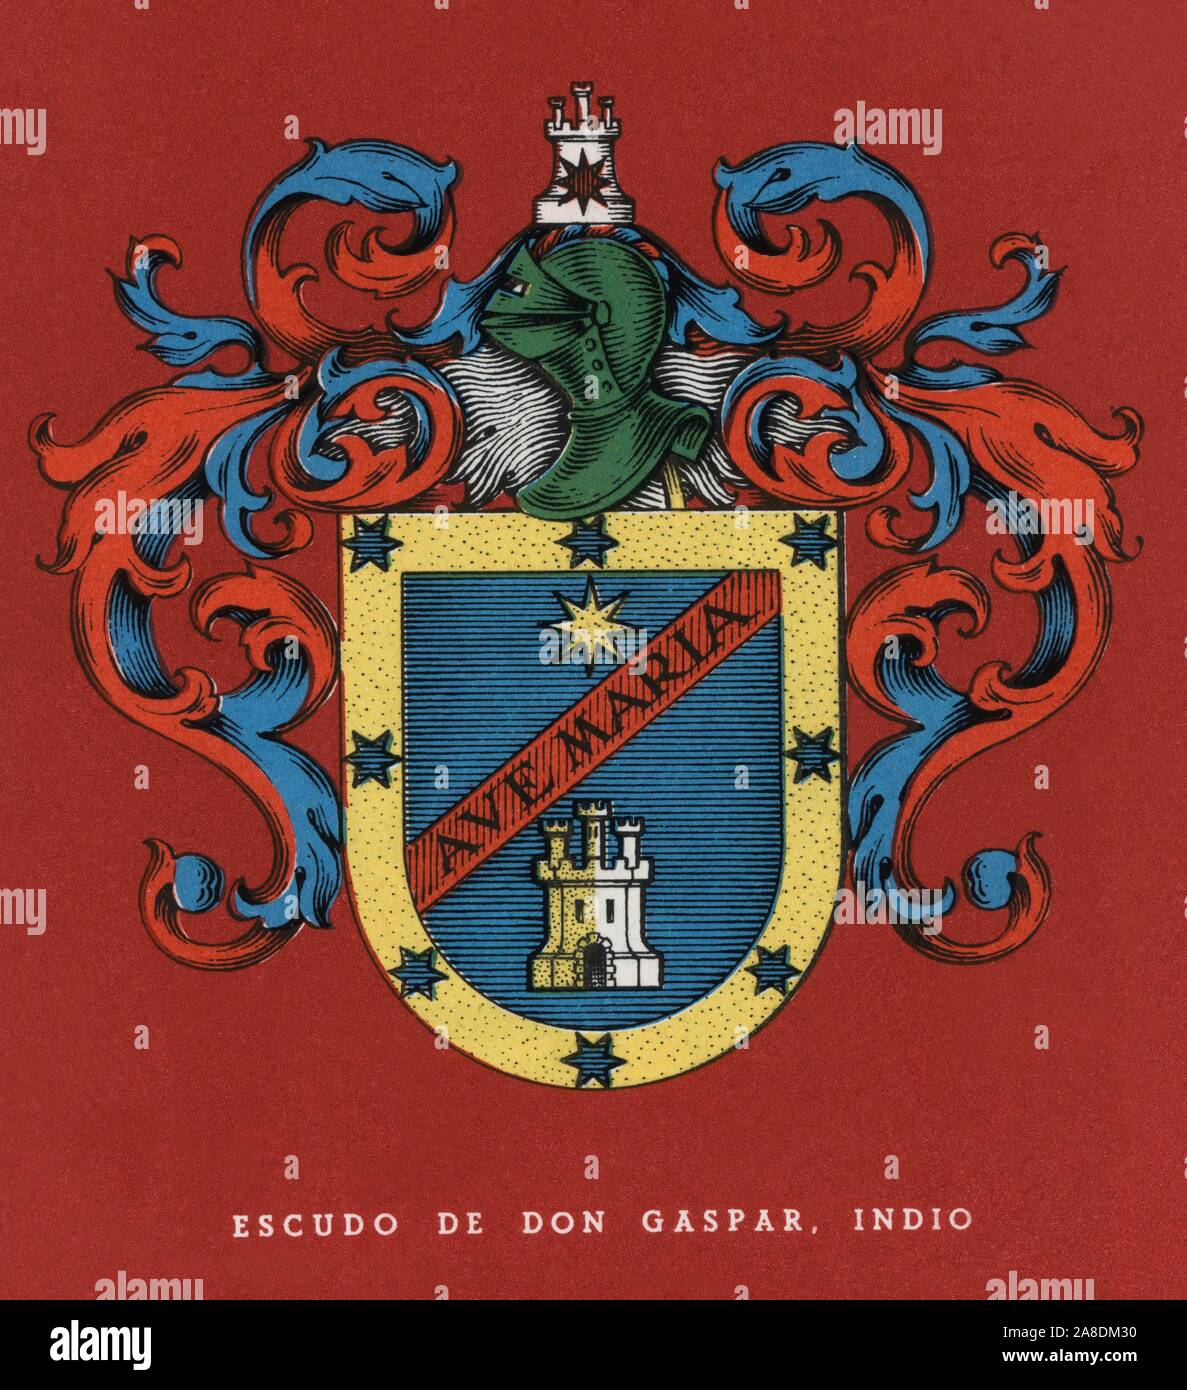 Heráldica. Escudo nobiliario del indio don Gaspar Jurado, escribano de cámara de la Real Audiencia de Lima. Año 1948. Stock Photo